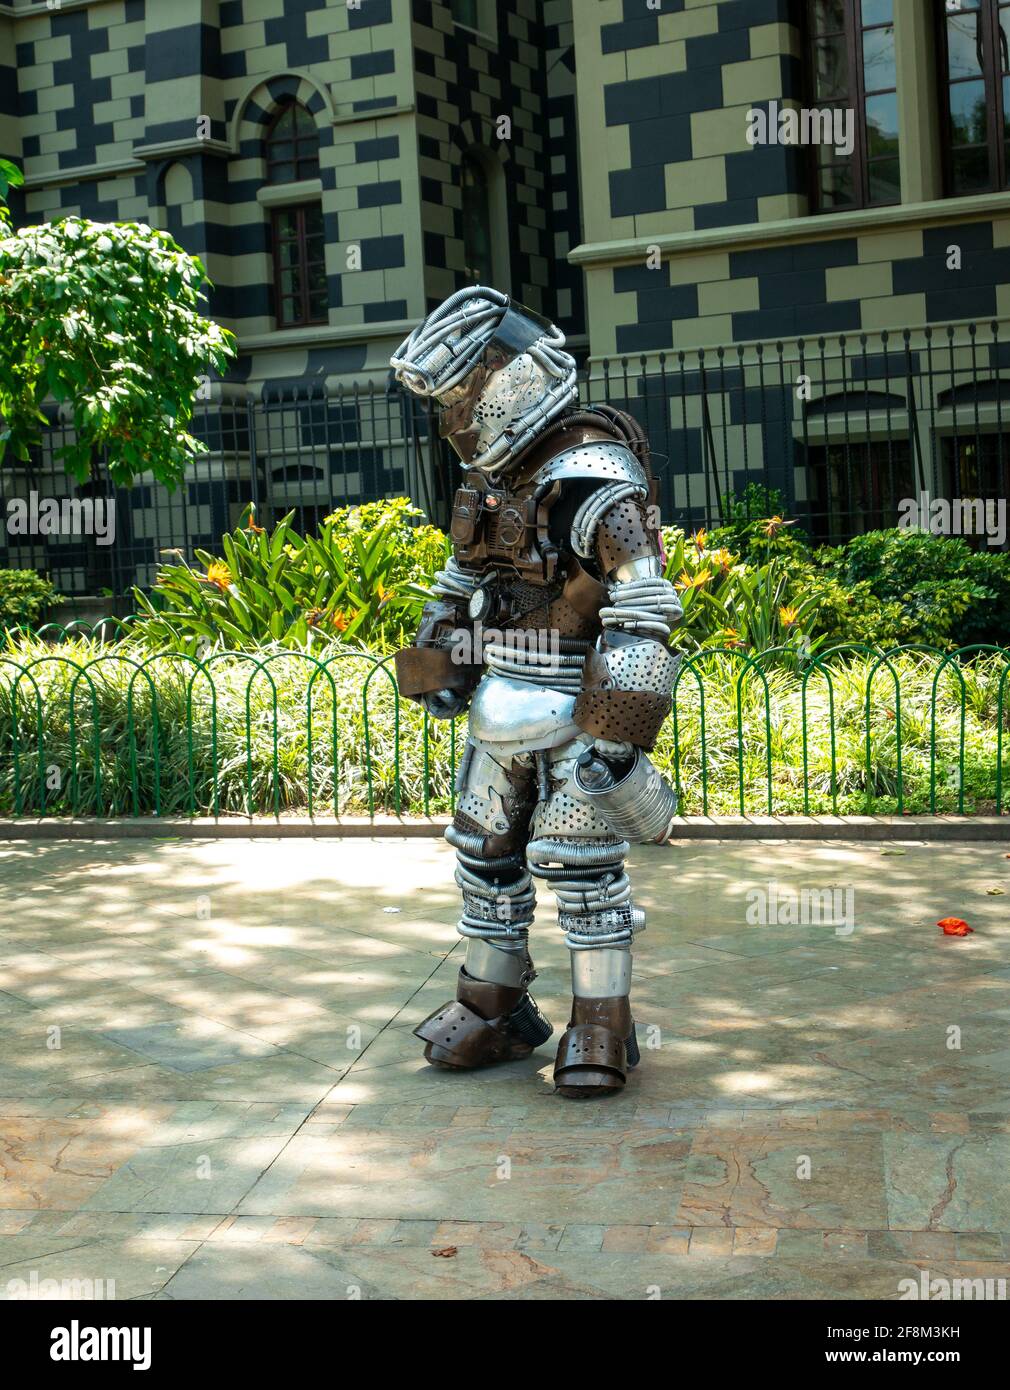 Medellin, Antioquia, Colombie - janvier 6 2021: L'homme latin habillé comme un robot posant sur la Plaza Botero Banque D'Images